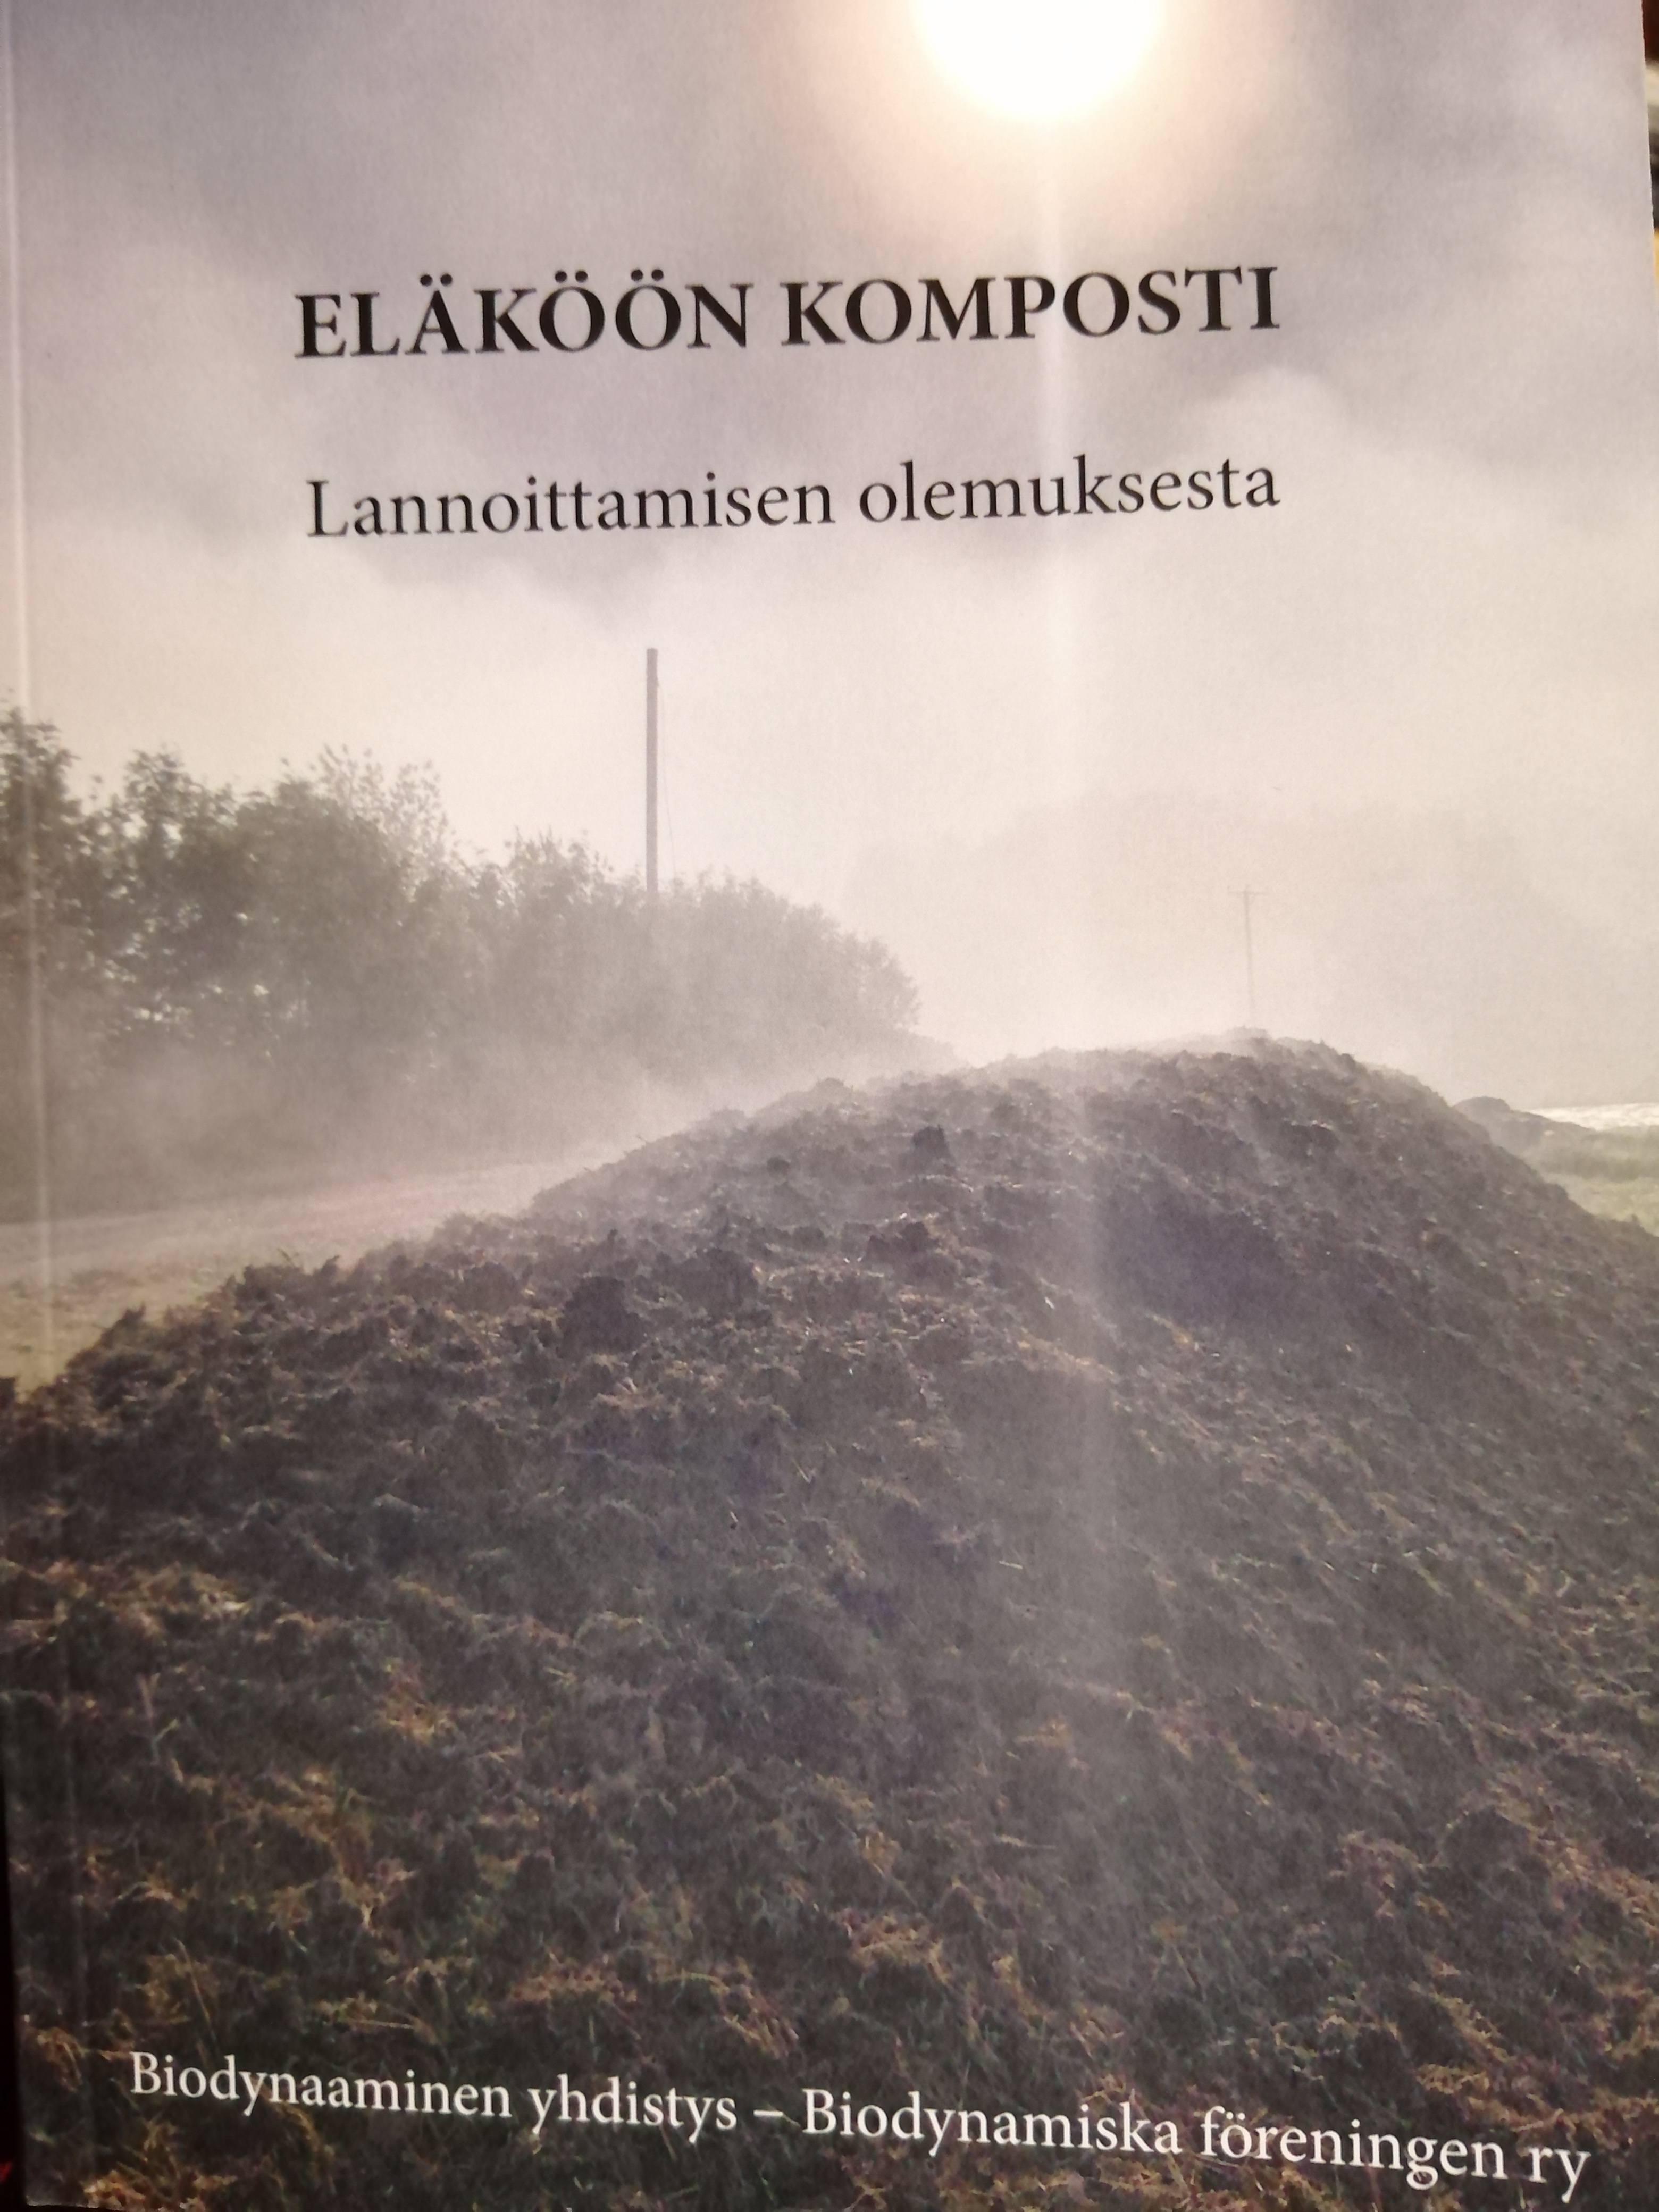 Sari Kalliokoski, Pirkko Okkonen, Kari Järvinen, Päivi Suokas: Eläköön komposti (Paperback, 2022, Biodynaaminen yhdistys - Biodynamiska föreningen ry)